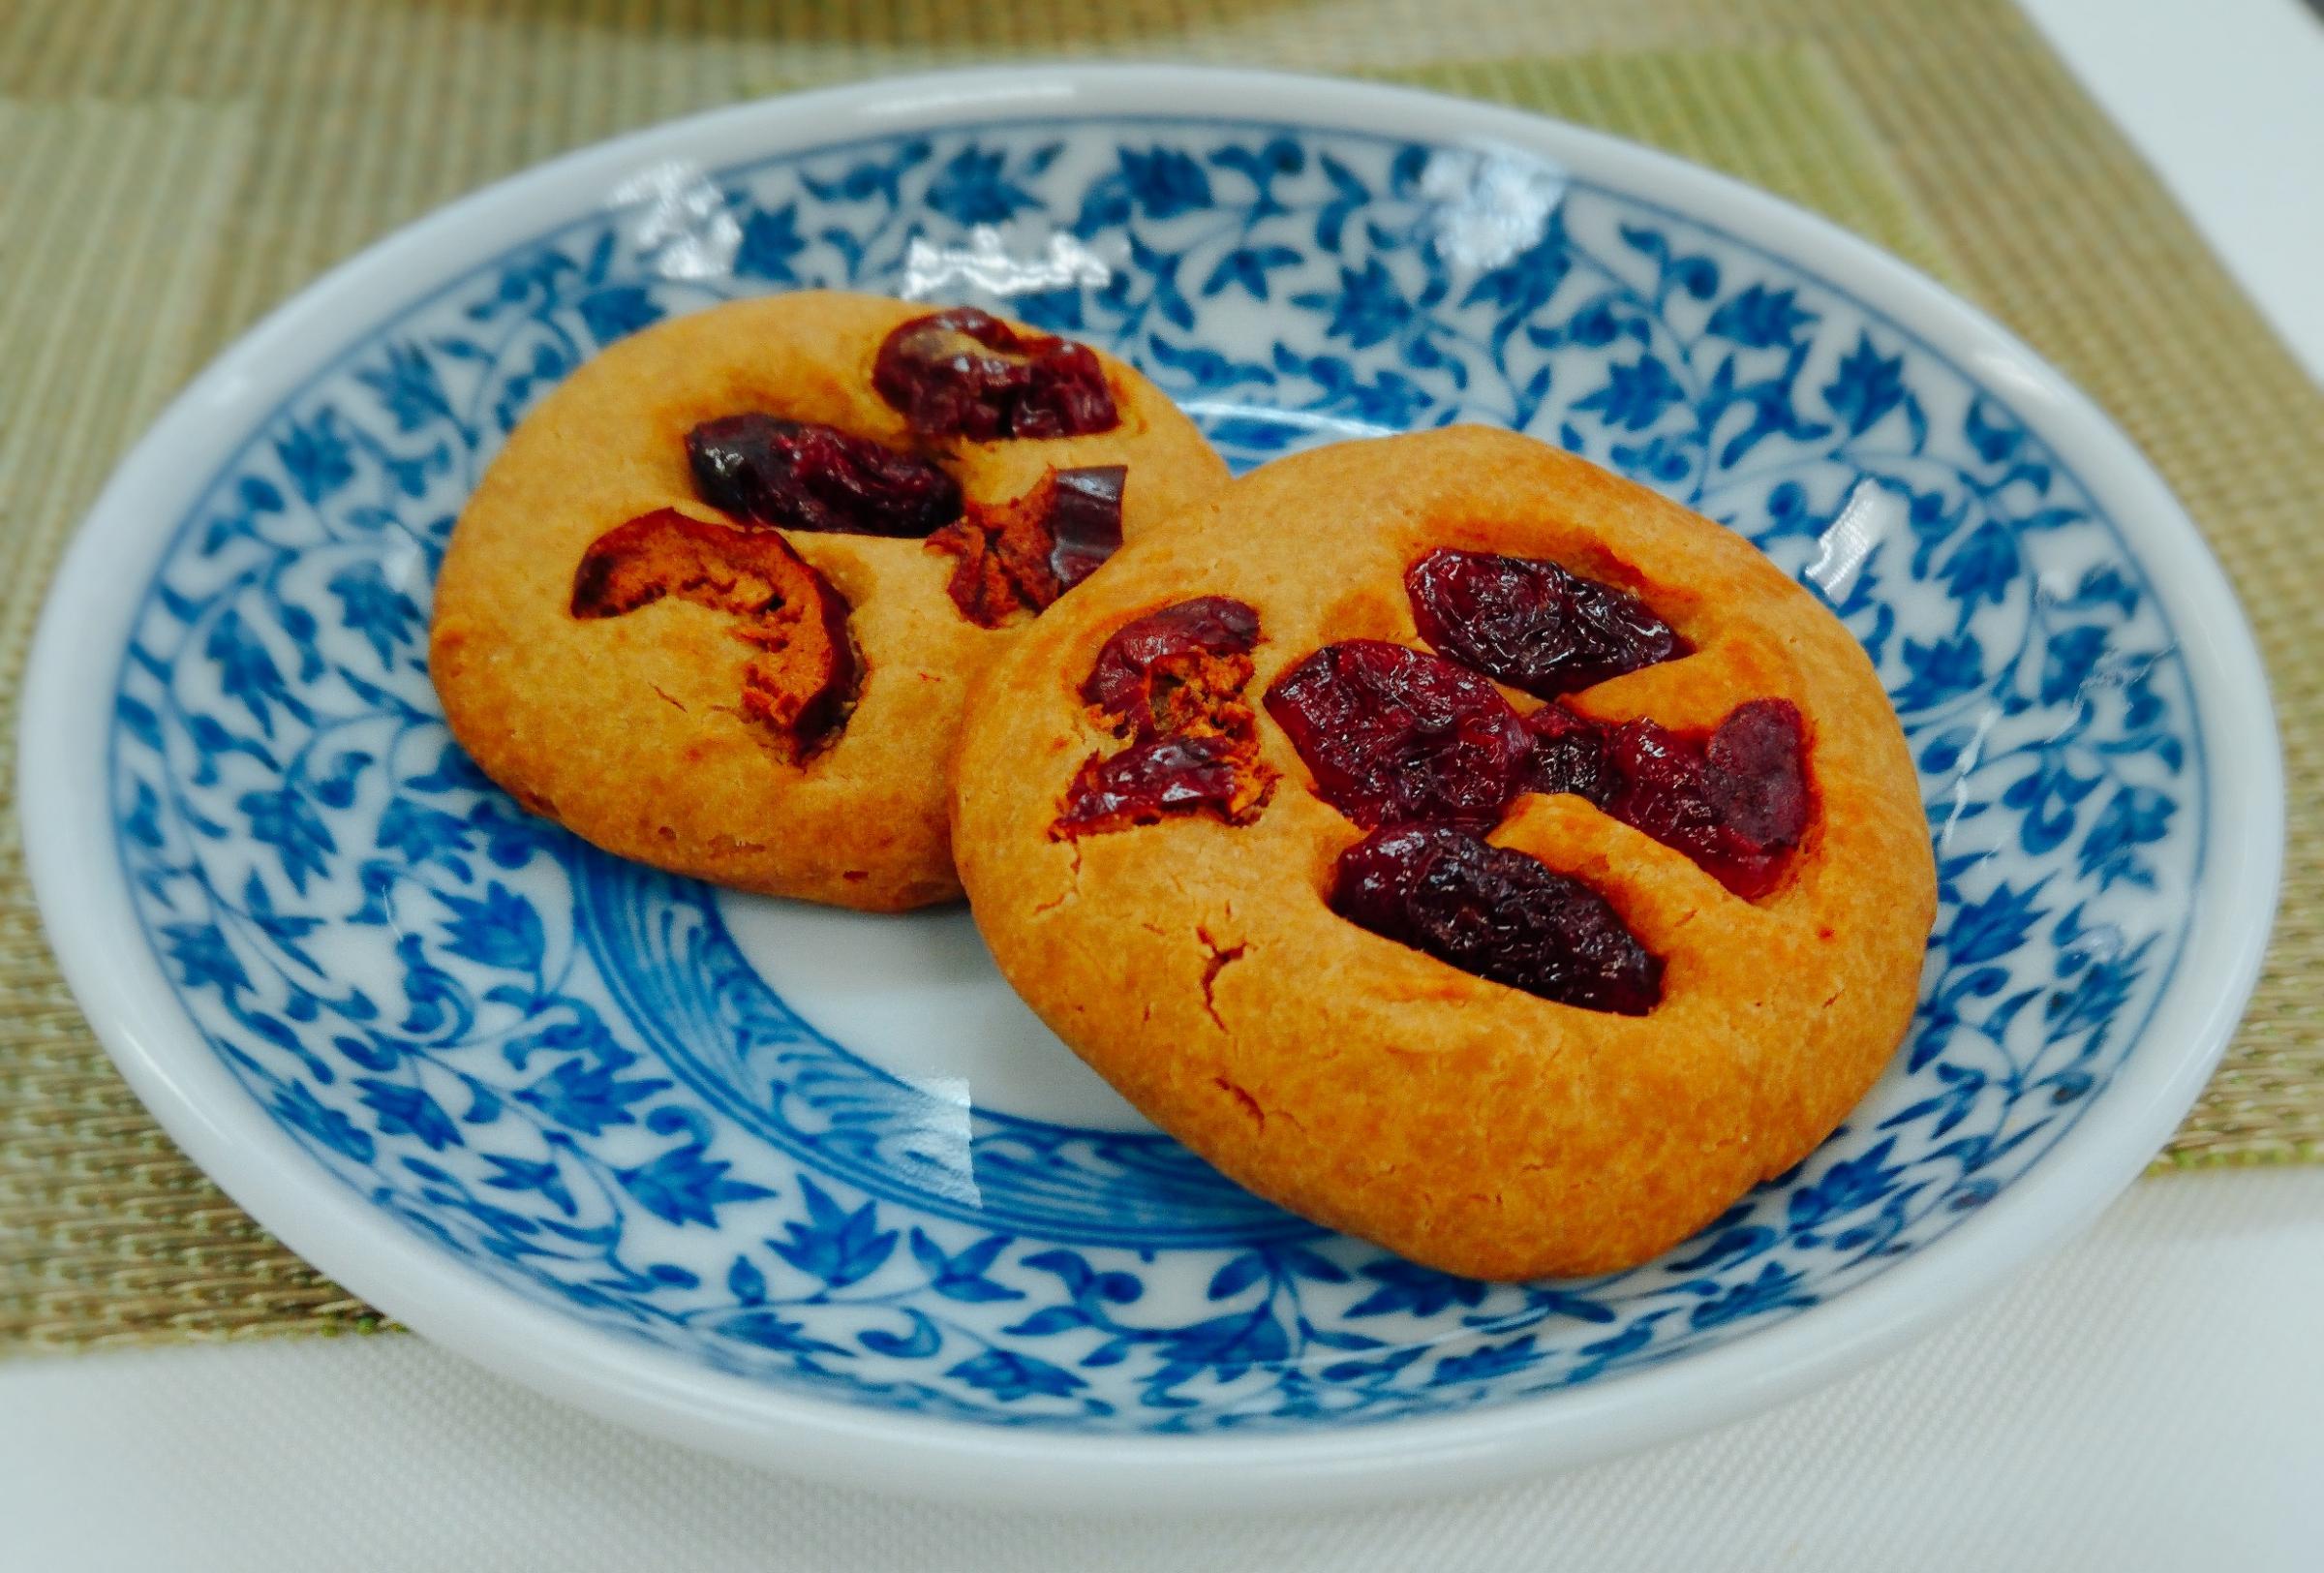 ～おすすめの一品～（ヨモギのクッキー）　　　　＊コメント 　　　　　　米粉の中にヨモギが入ったクッキー 　　　　　　　で、棗とクランベリーが、とても可愛い 　　　　　　　素朴なお菓子です